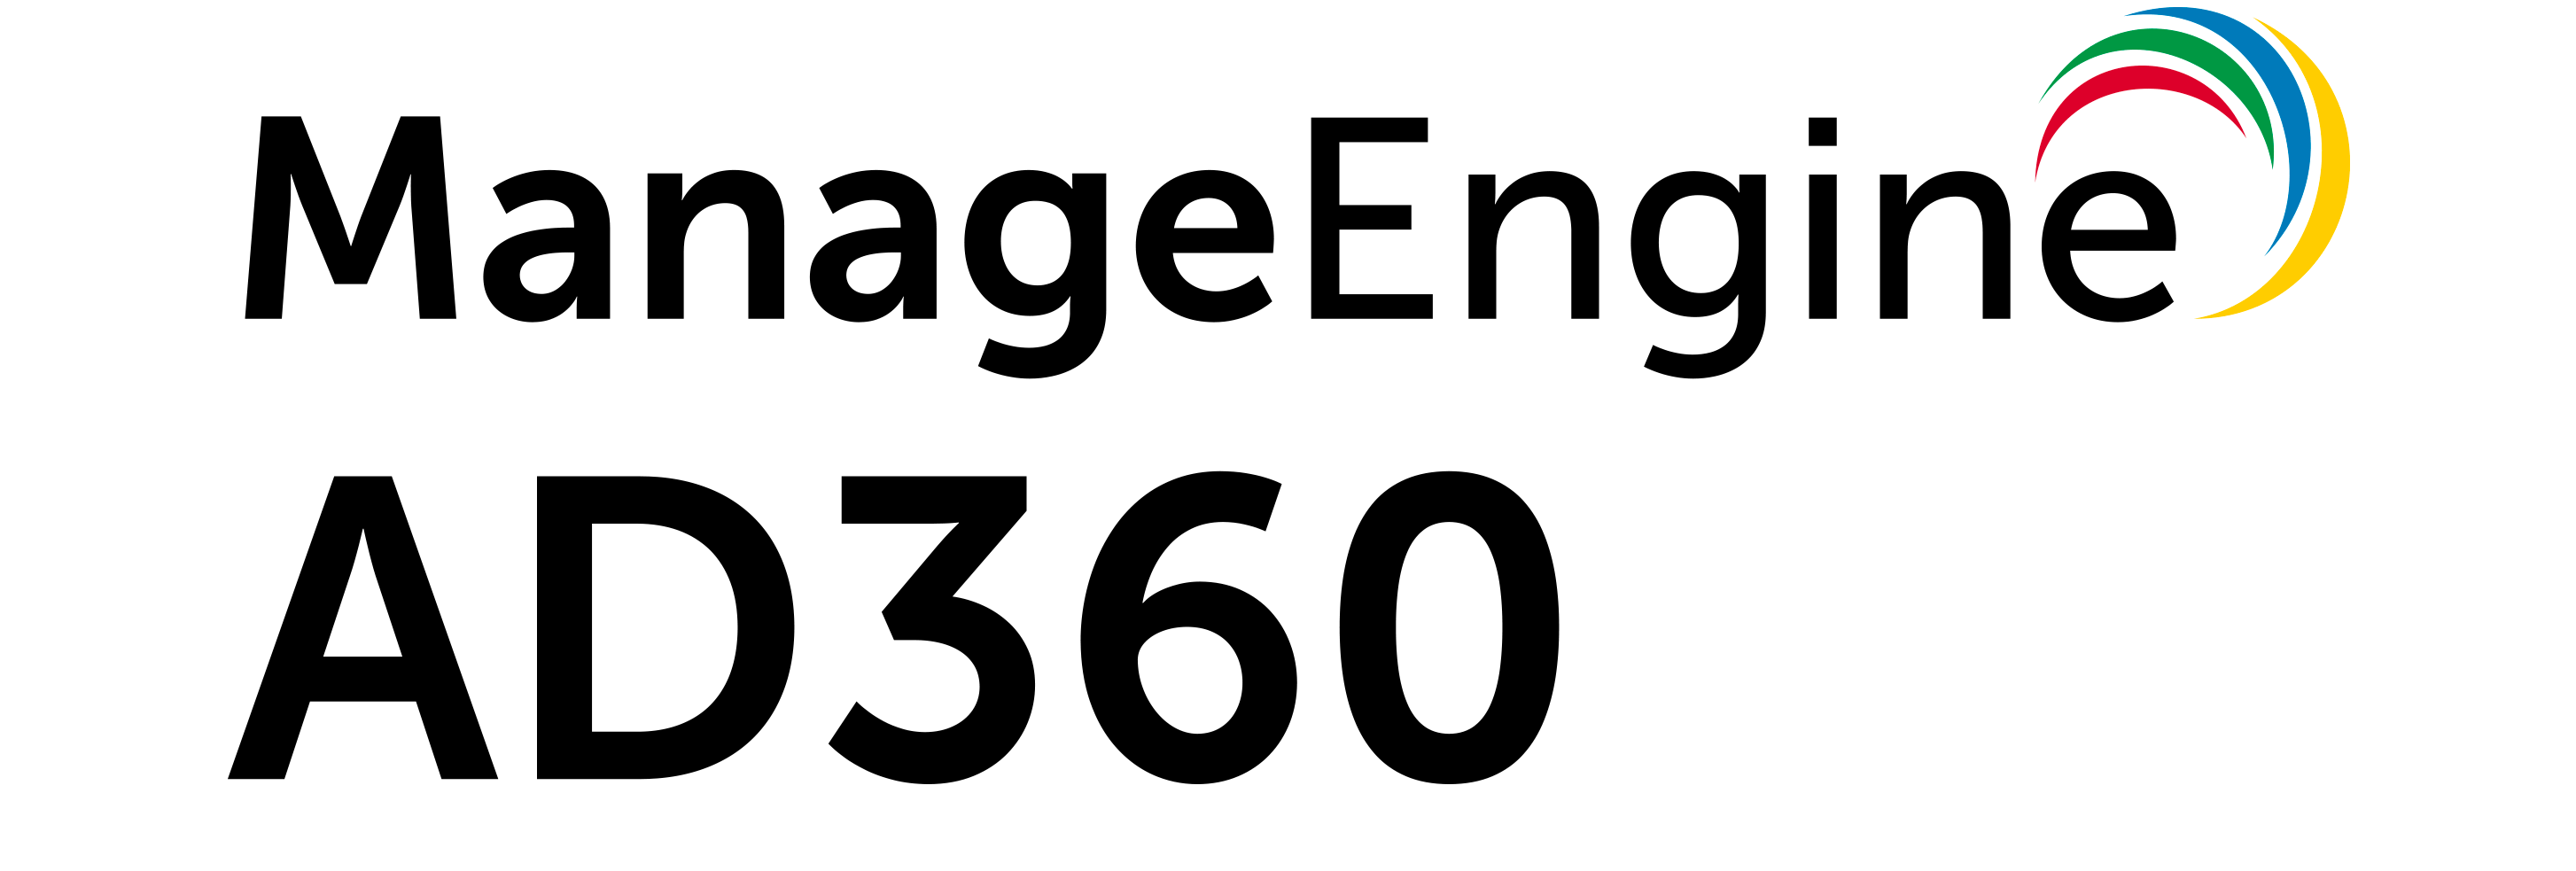 logo for petri.com sponsor ManageEngine